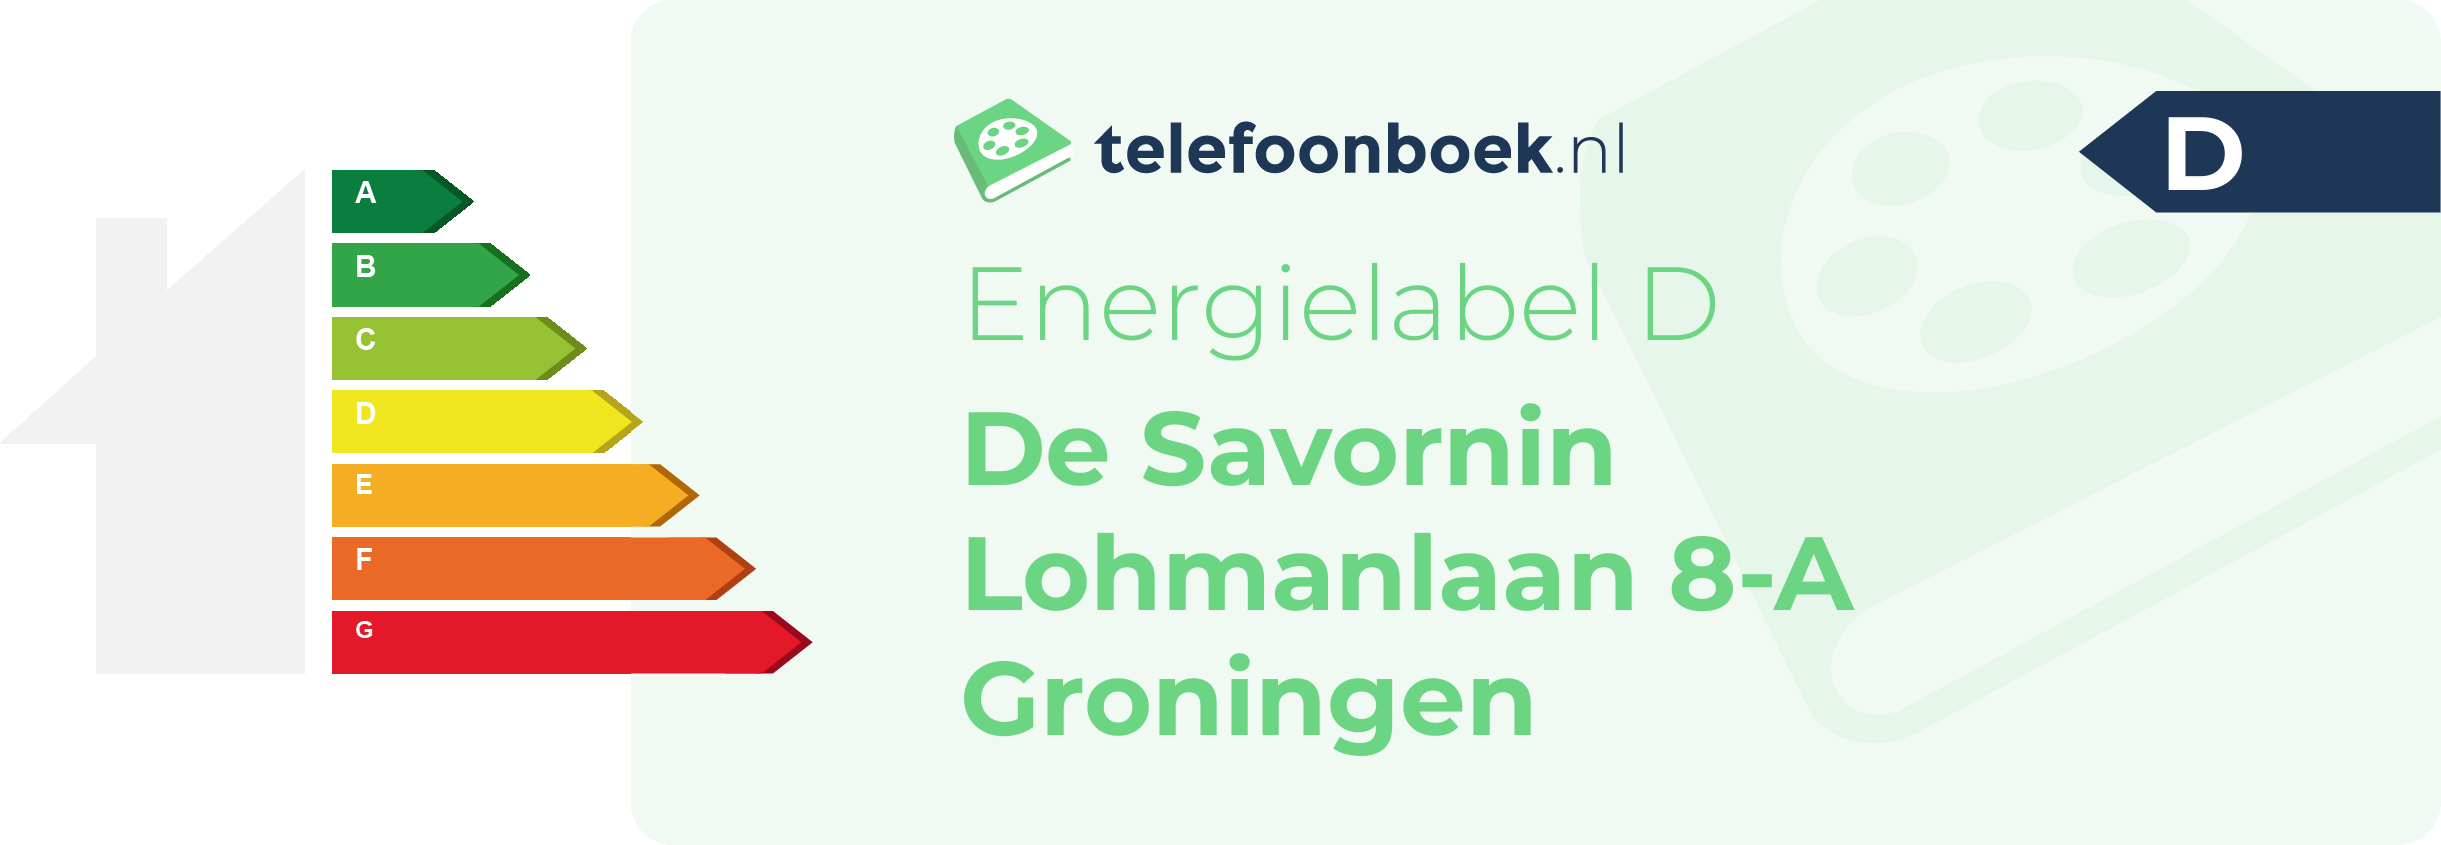 Energielabel De Savornin Lohmanlaan 8-A Groningen